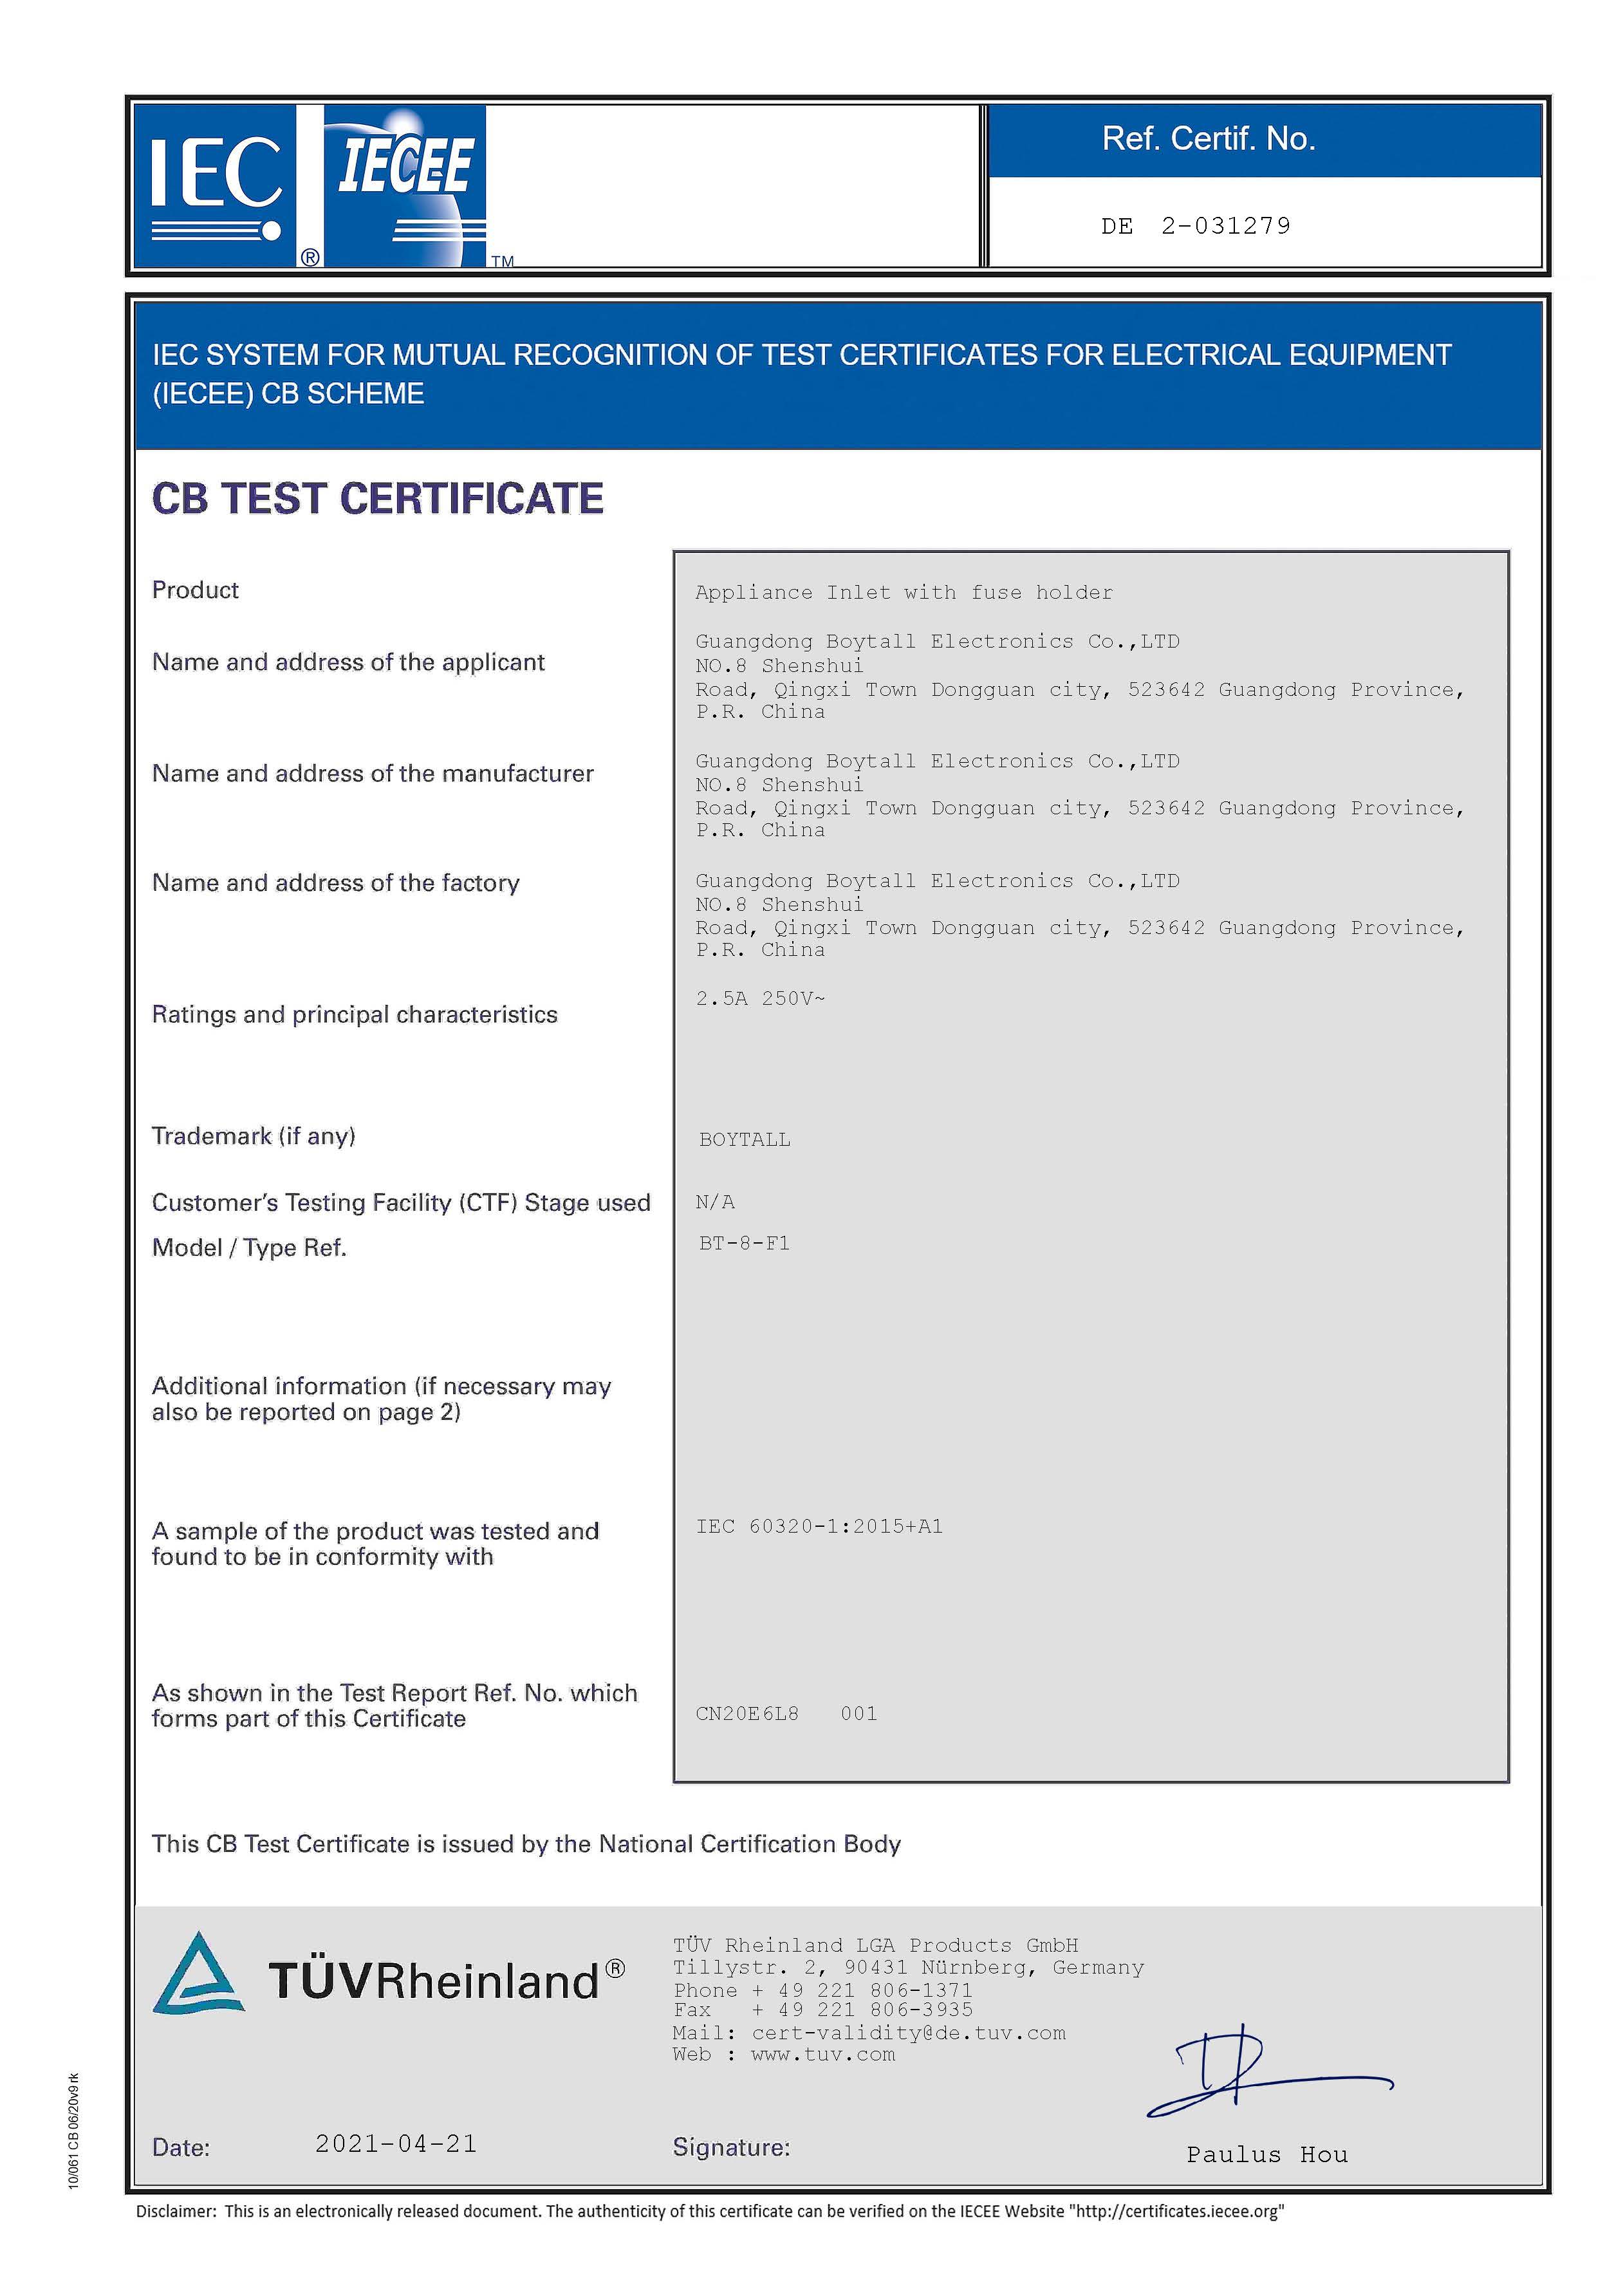 BT-8-F1系列 IEC证书